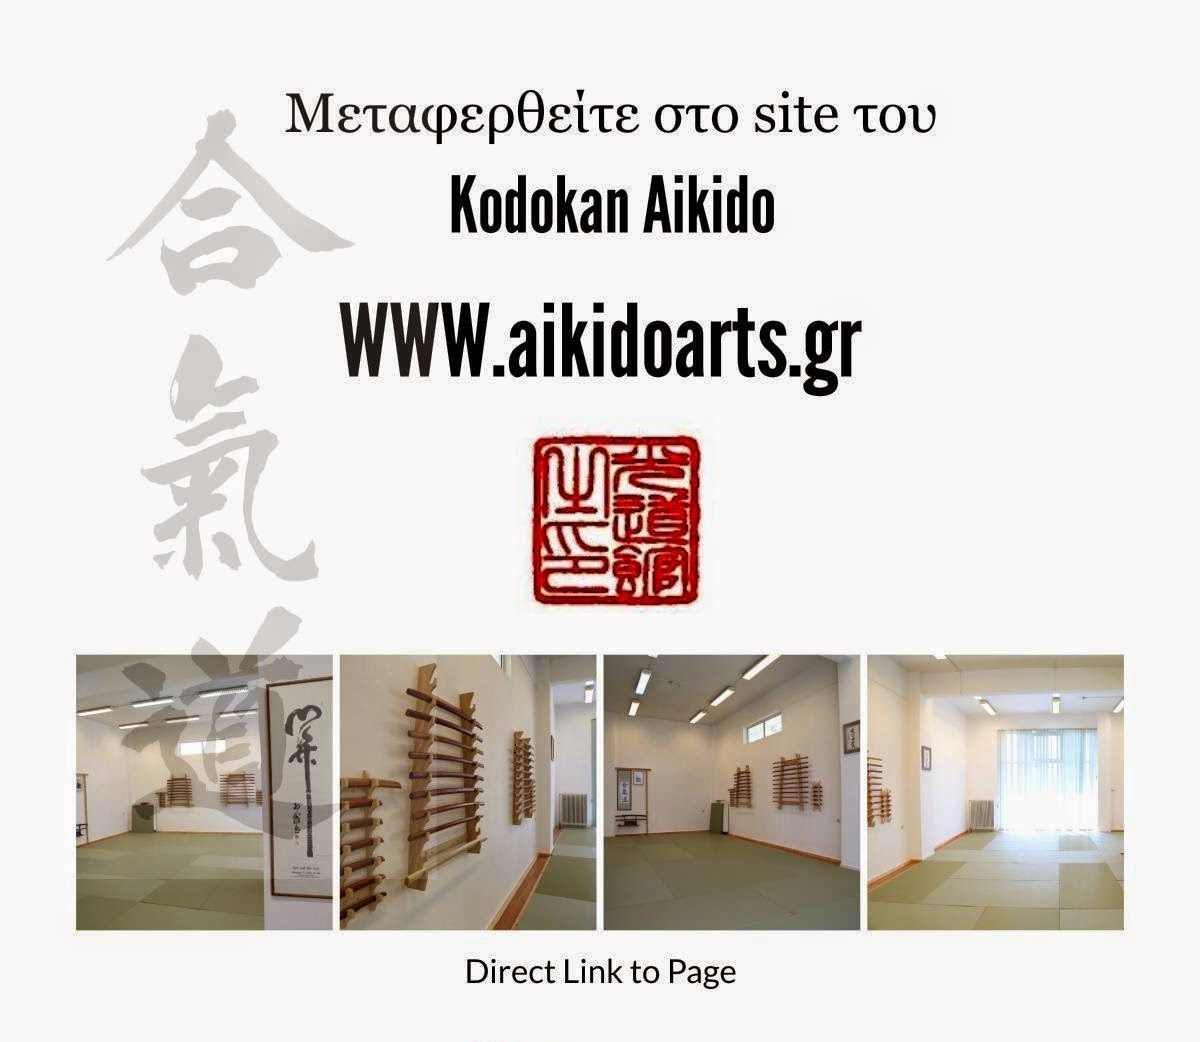 http://www.aikidoarts.gr/